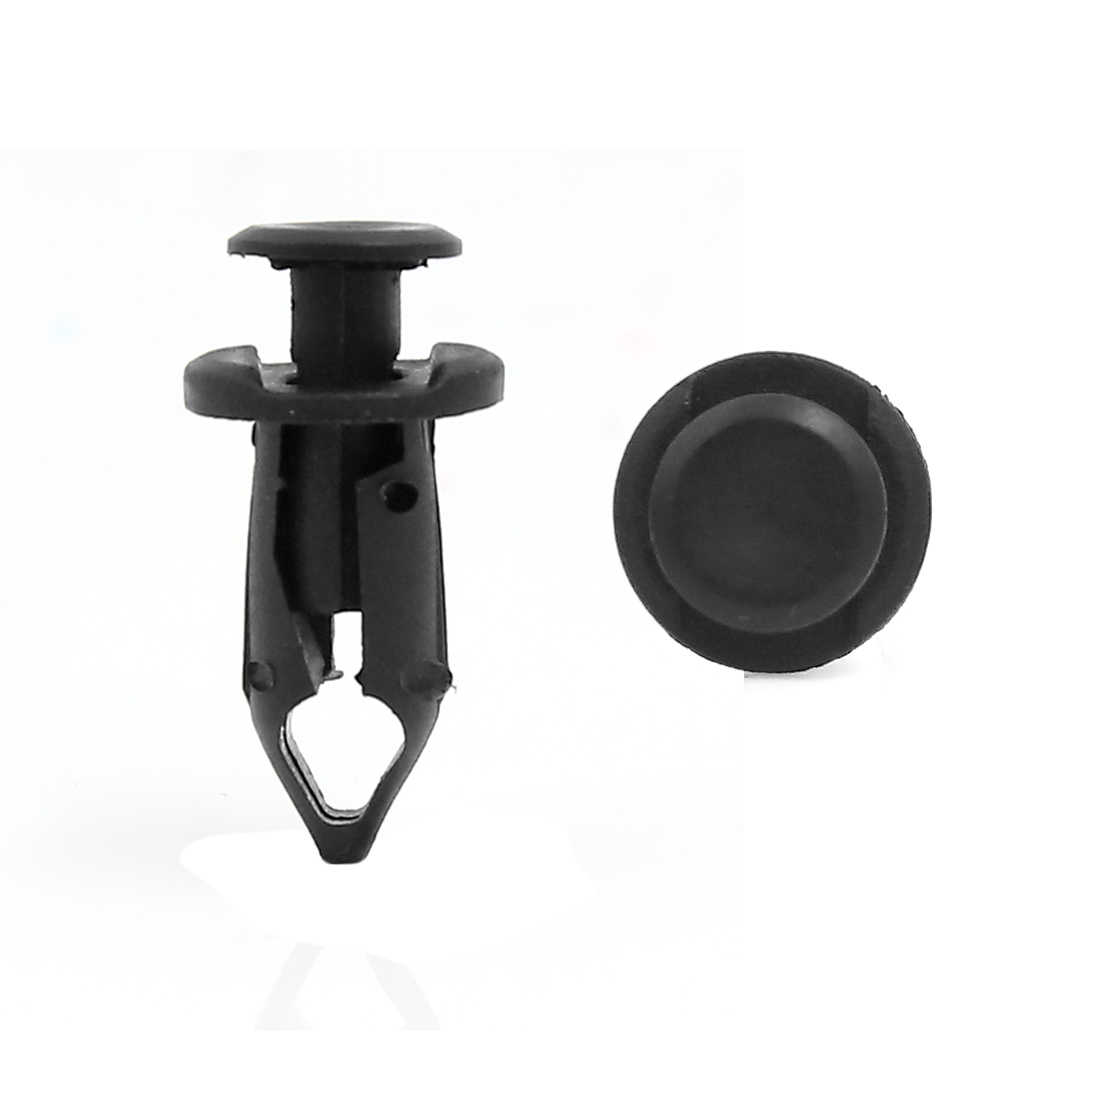 Unique Bargains 50Pcs Black Plastic Rivet Push Pin Type Trim Fastener Clips 9mm for Car